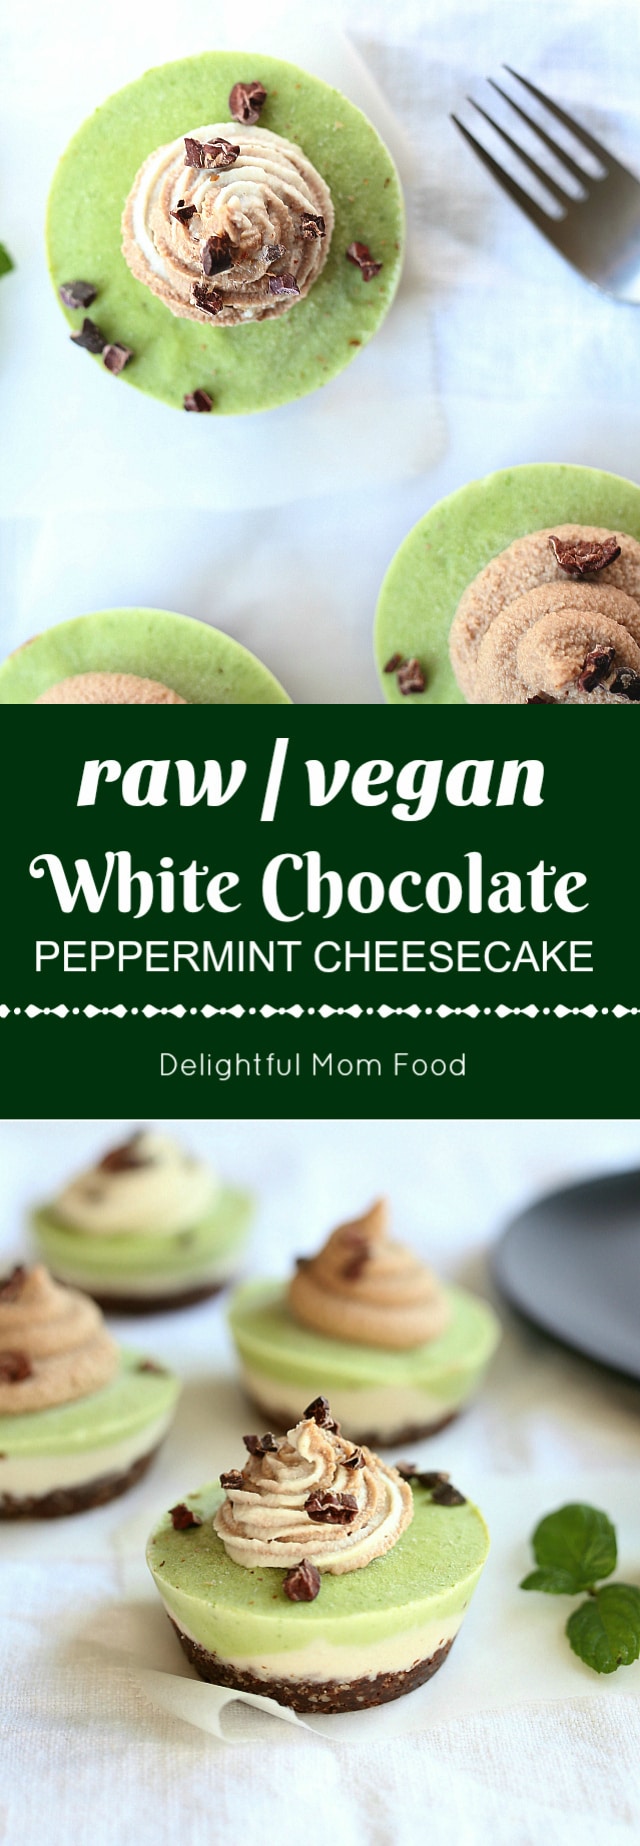 white chocolate peppermint cheesecake vegan raw gluten free